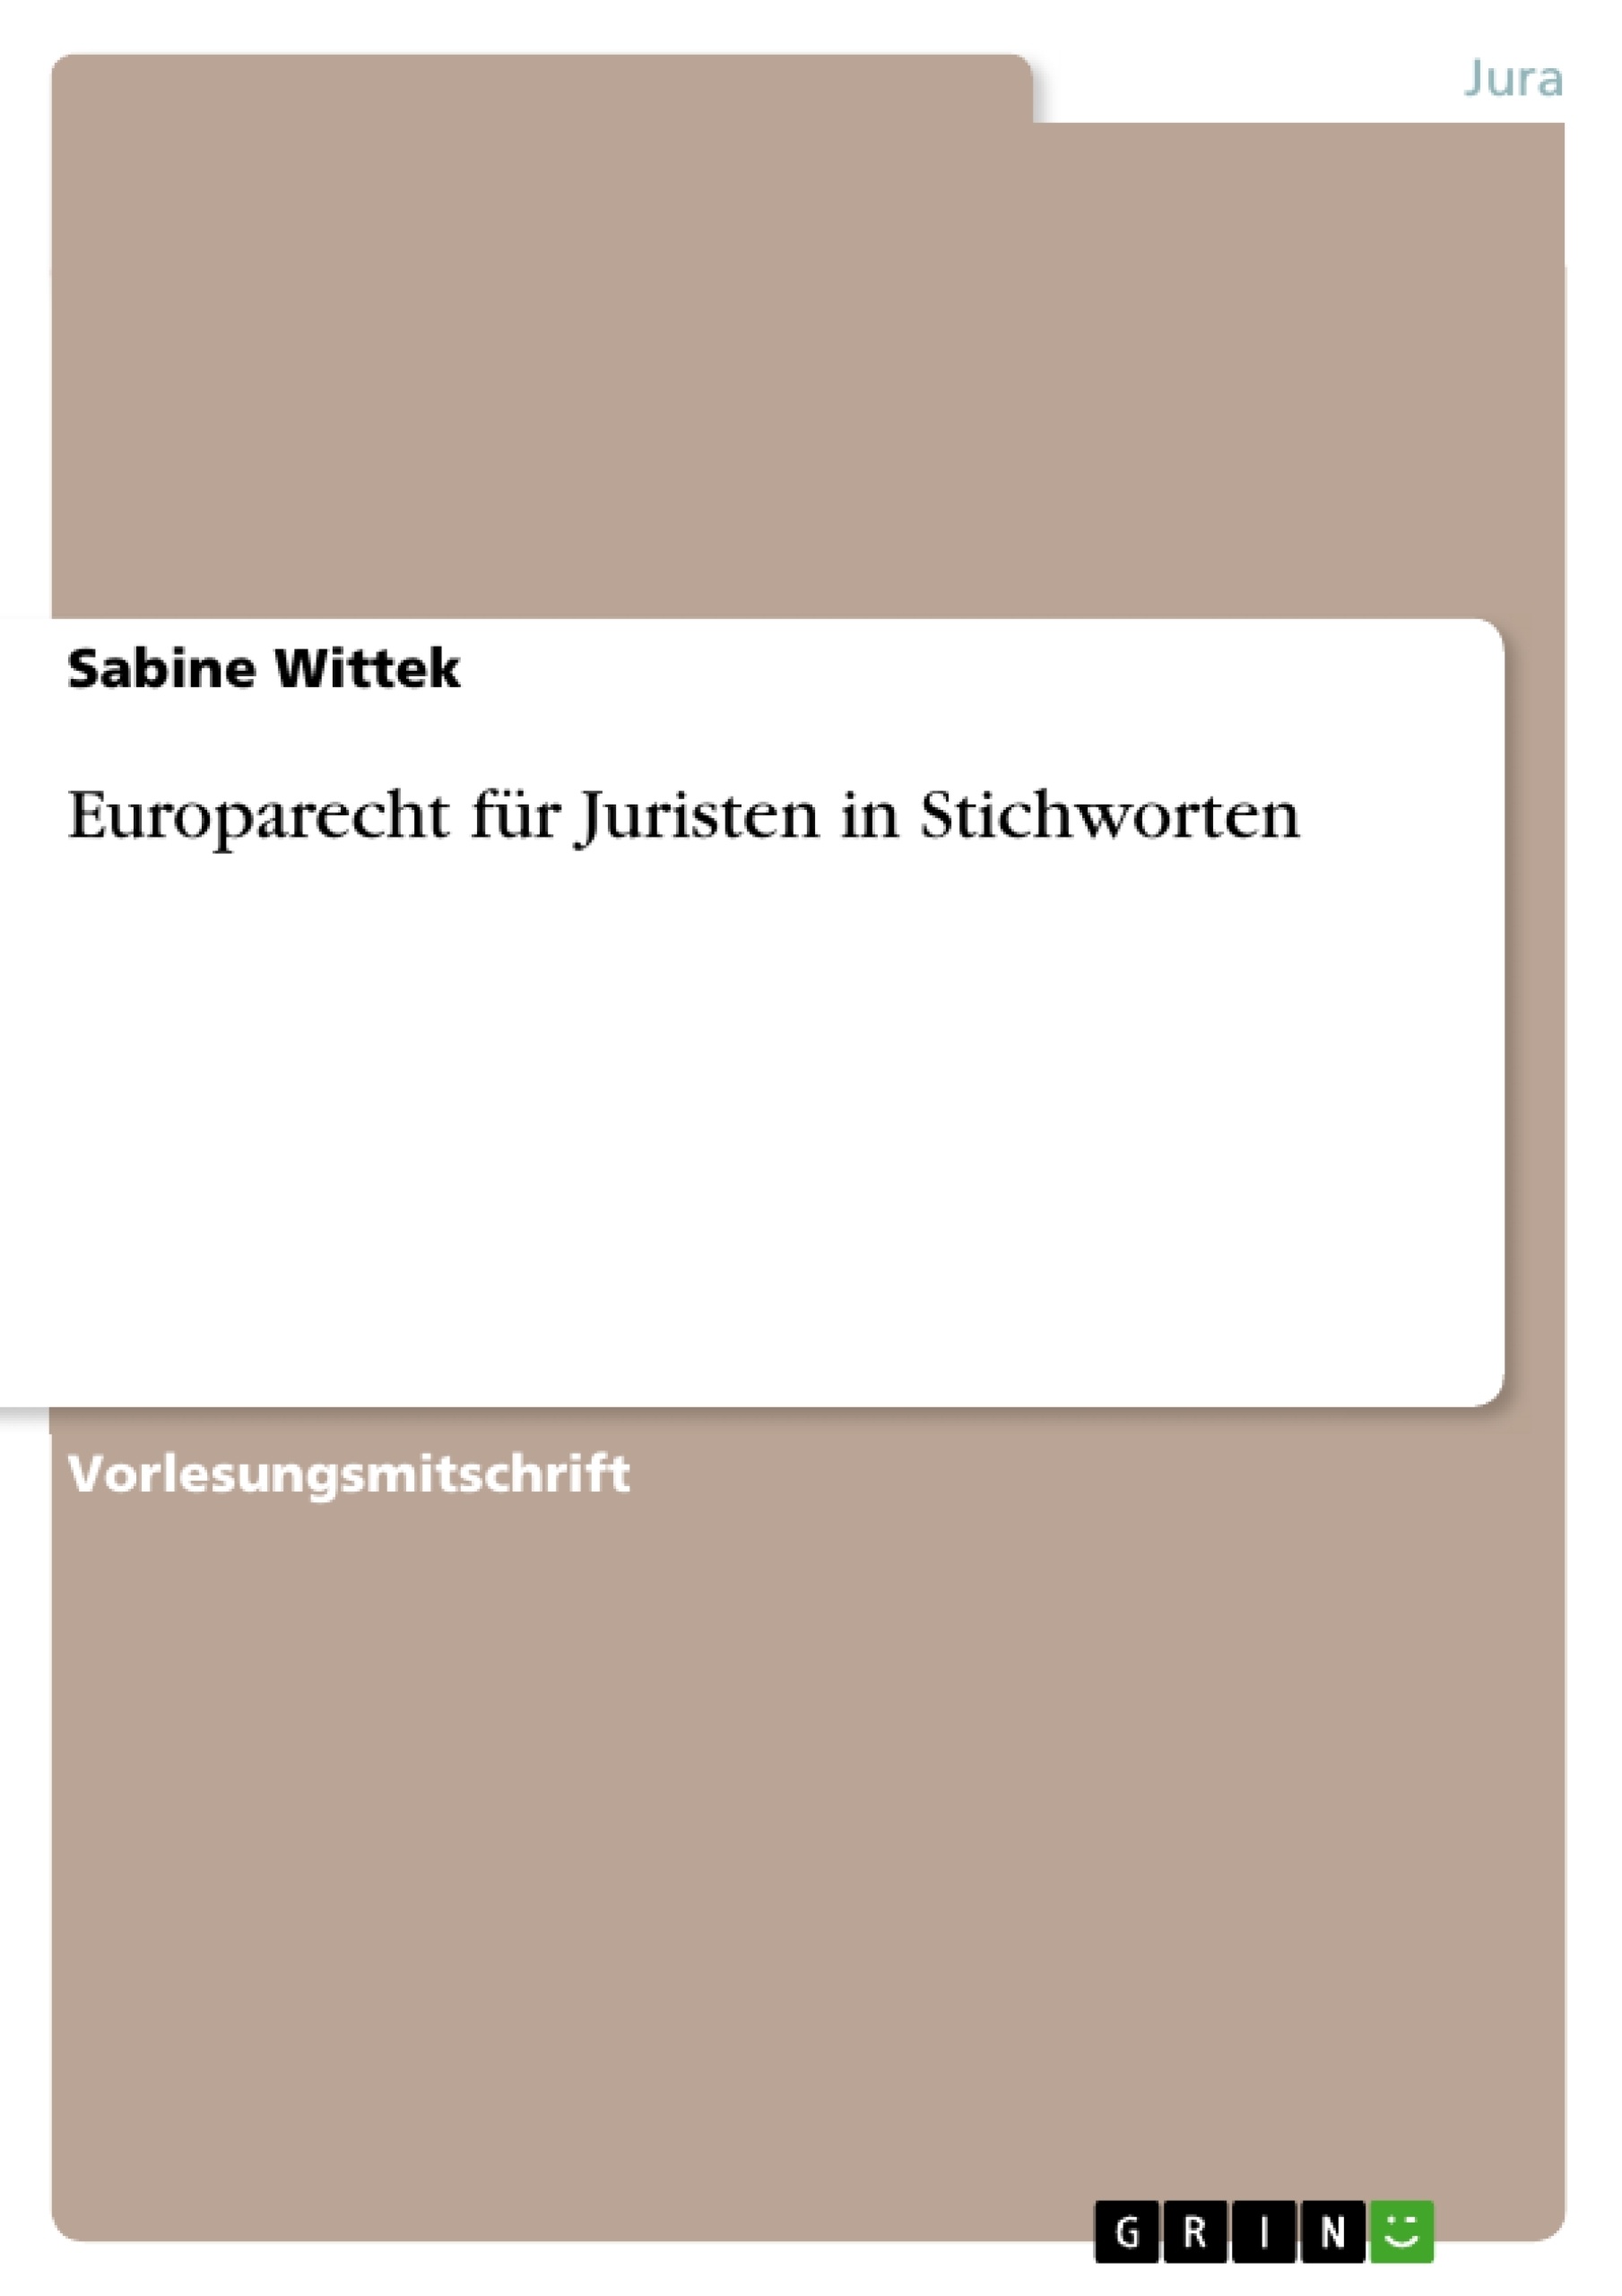 Título: Europarecht für Juristen in Stichworten